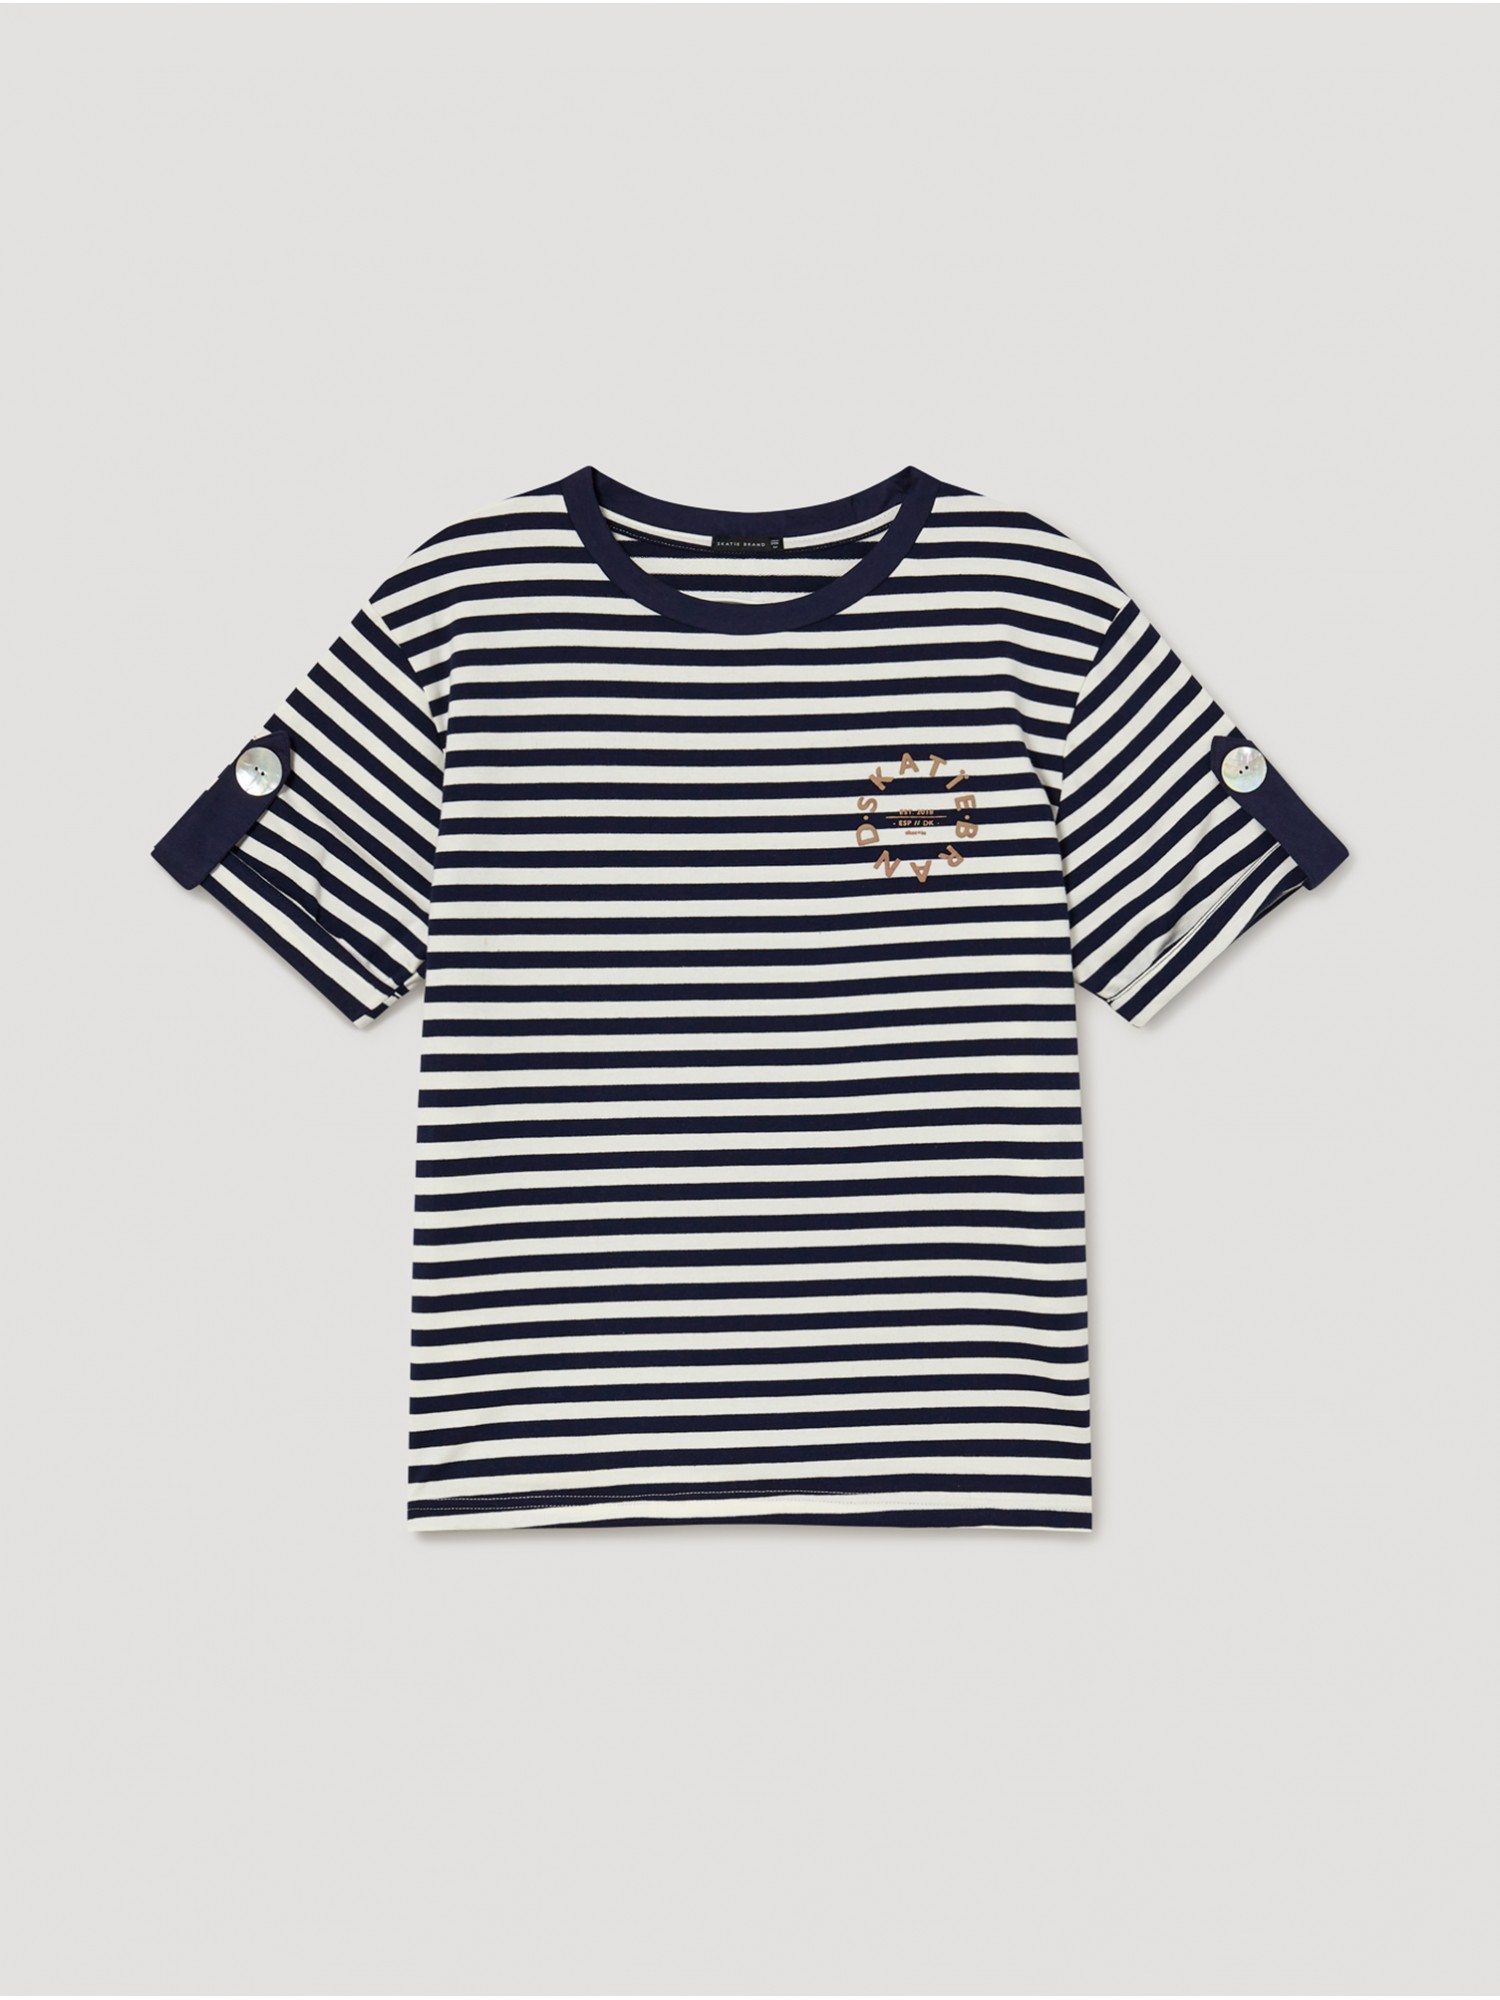 Camiseta rayas marineras Yate. Colección SS23 Skatïe en candelascloset. Tejido de algodón en manga corta con detalle de botón